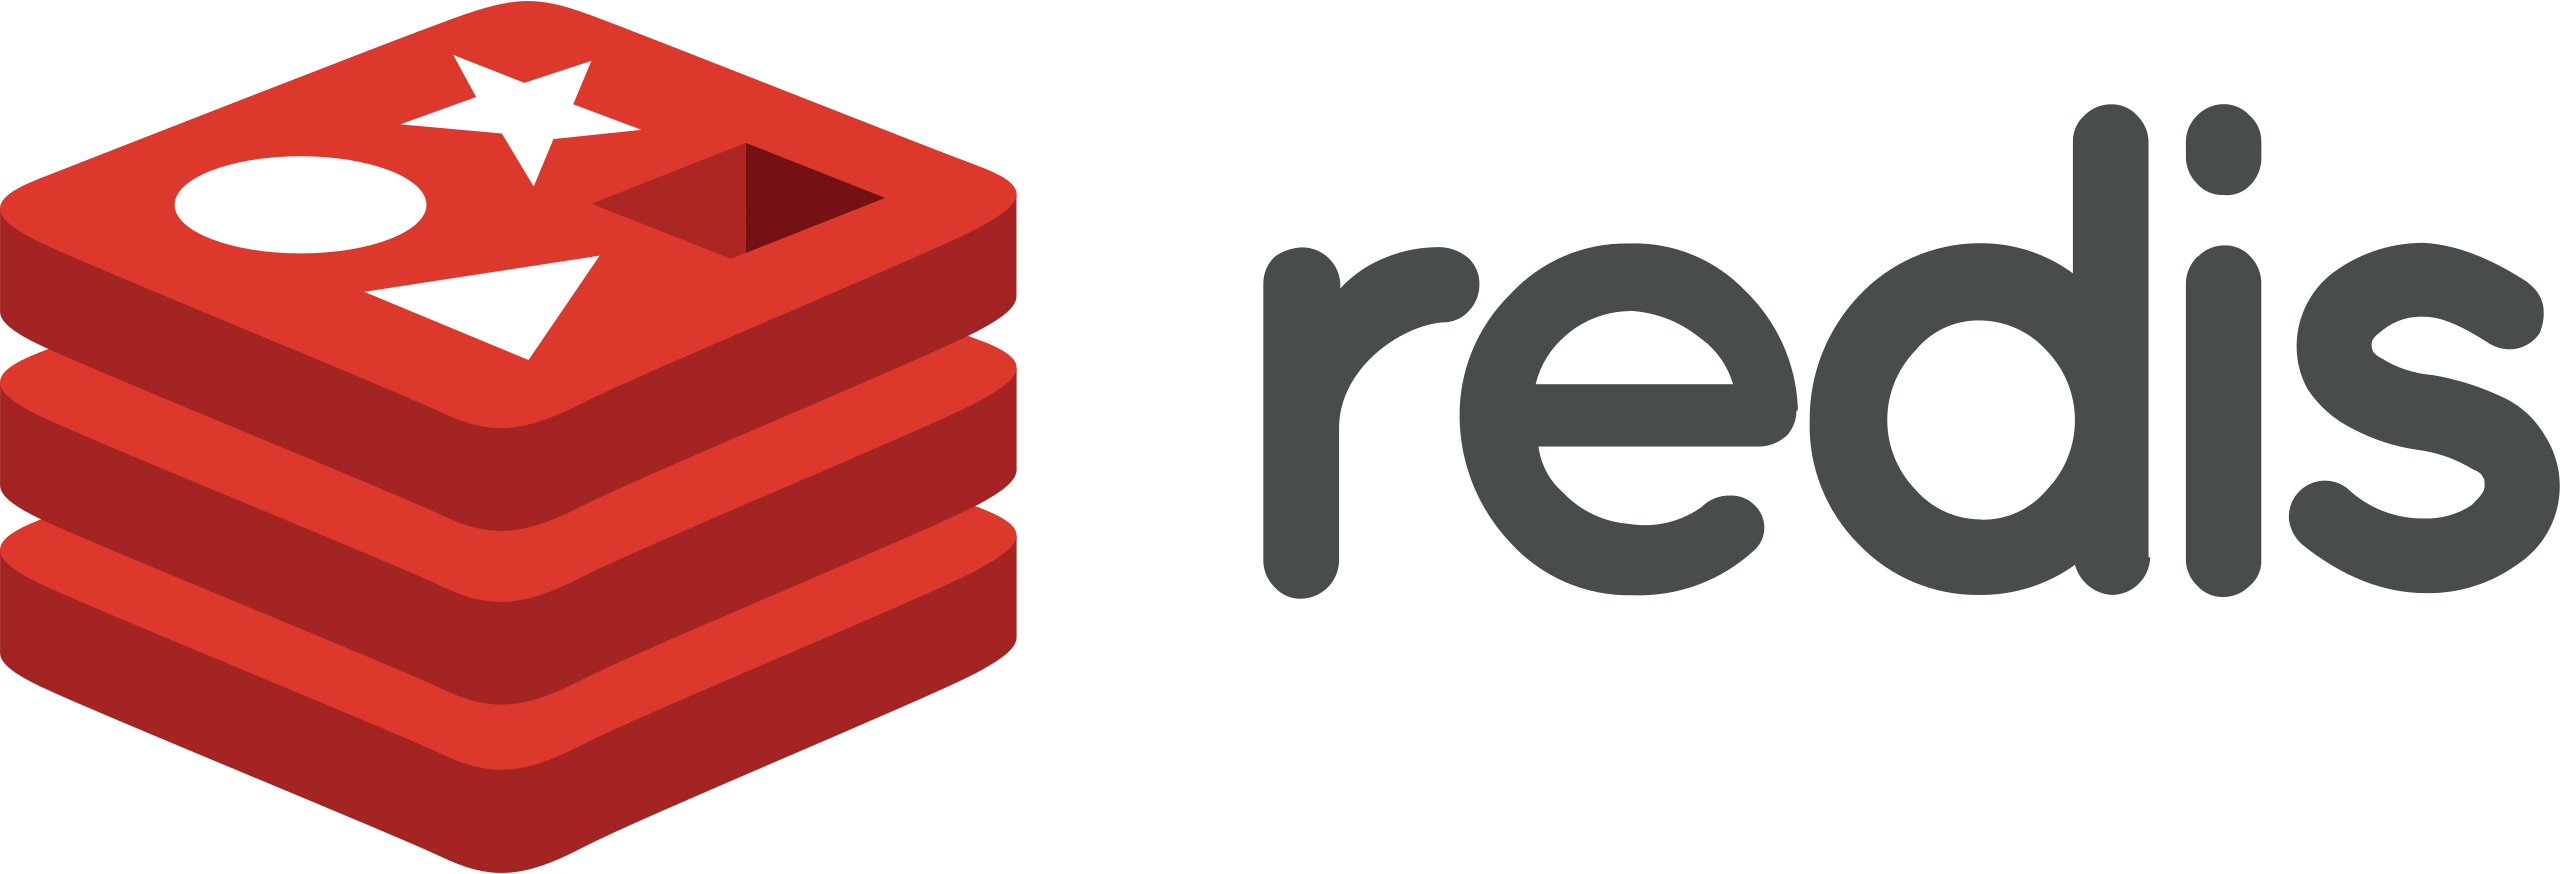 Redis Icon